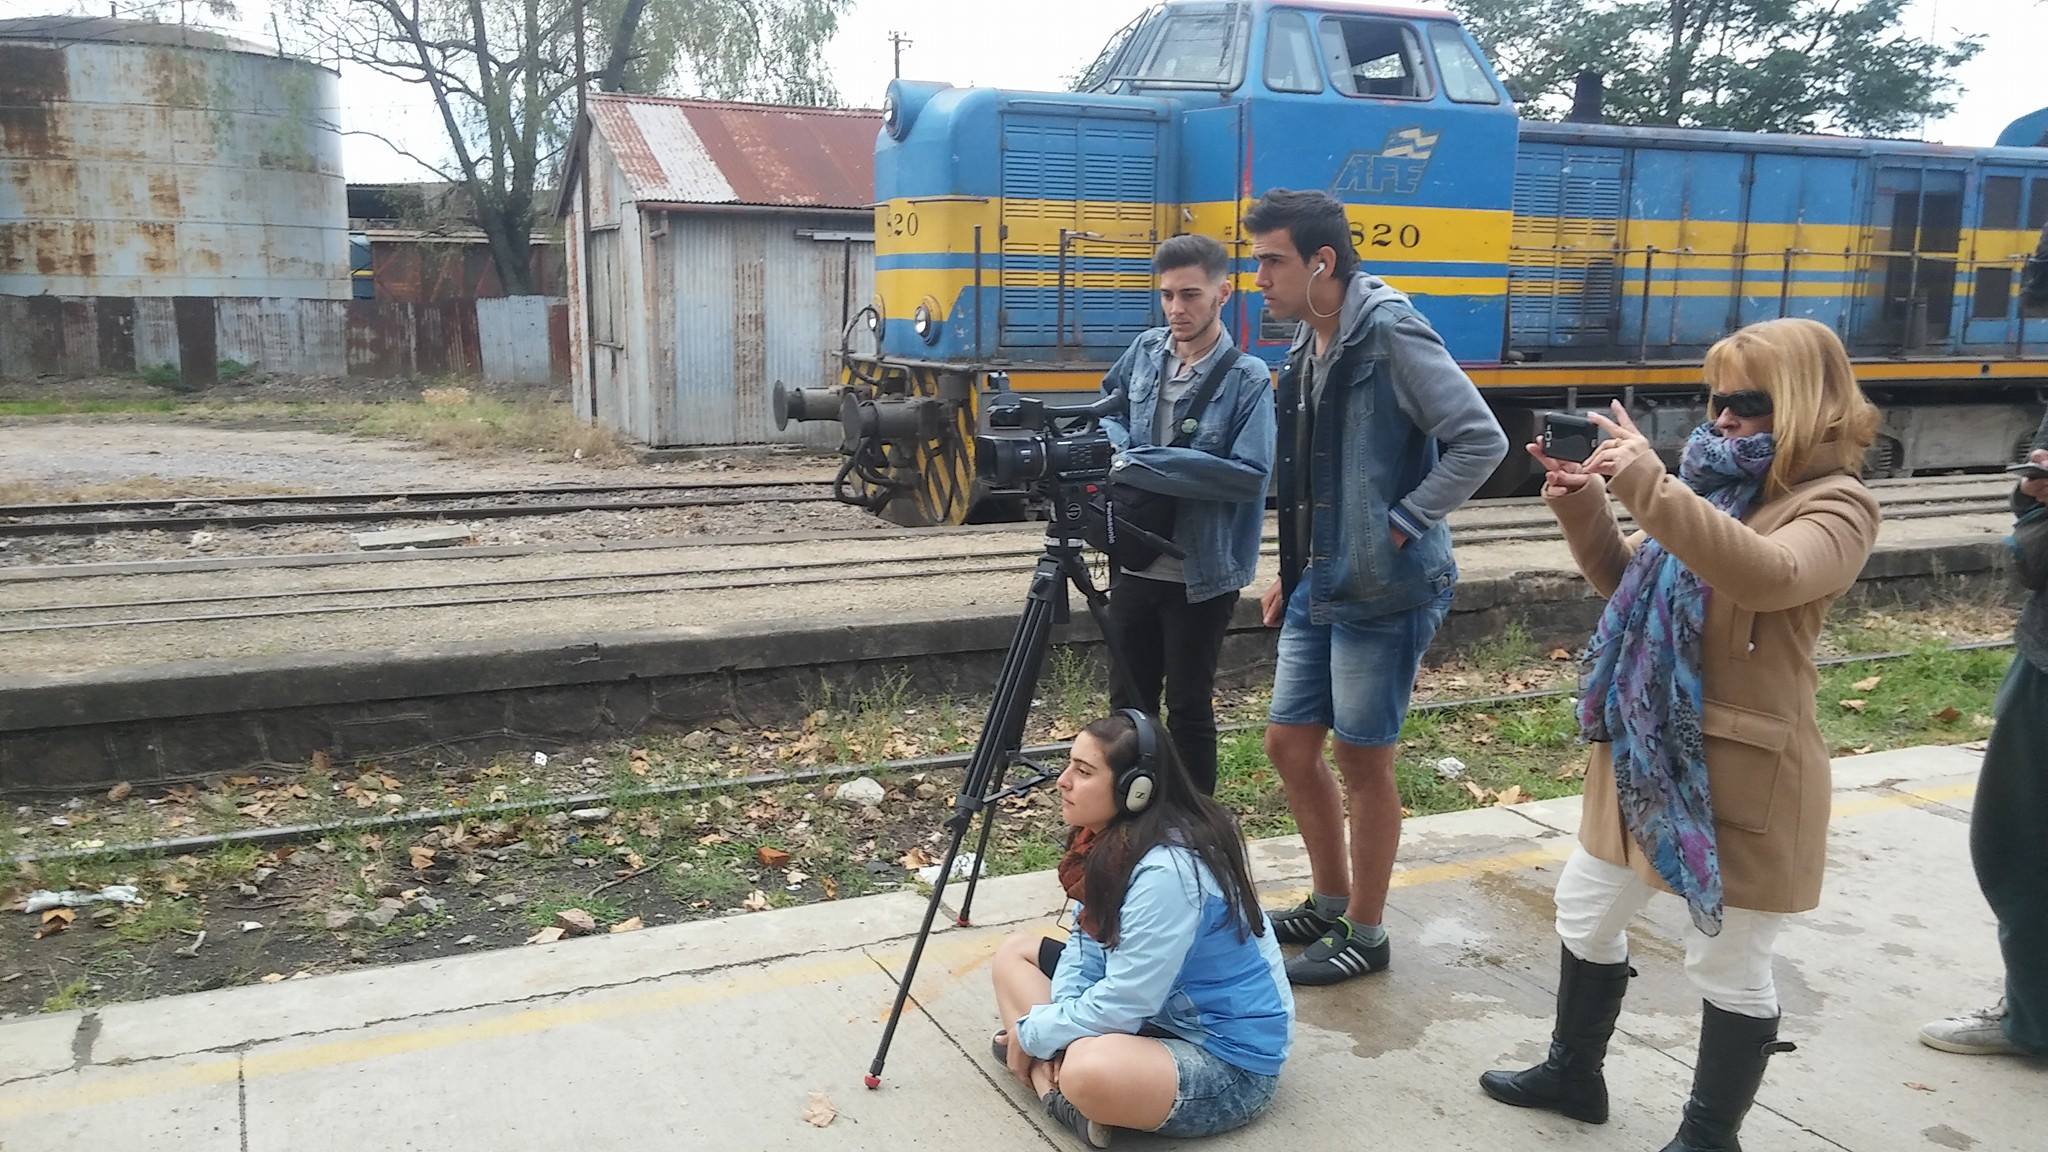 El equipo de Comisión Caos filmando en la estación de trenes de Peñarol